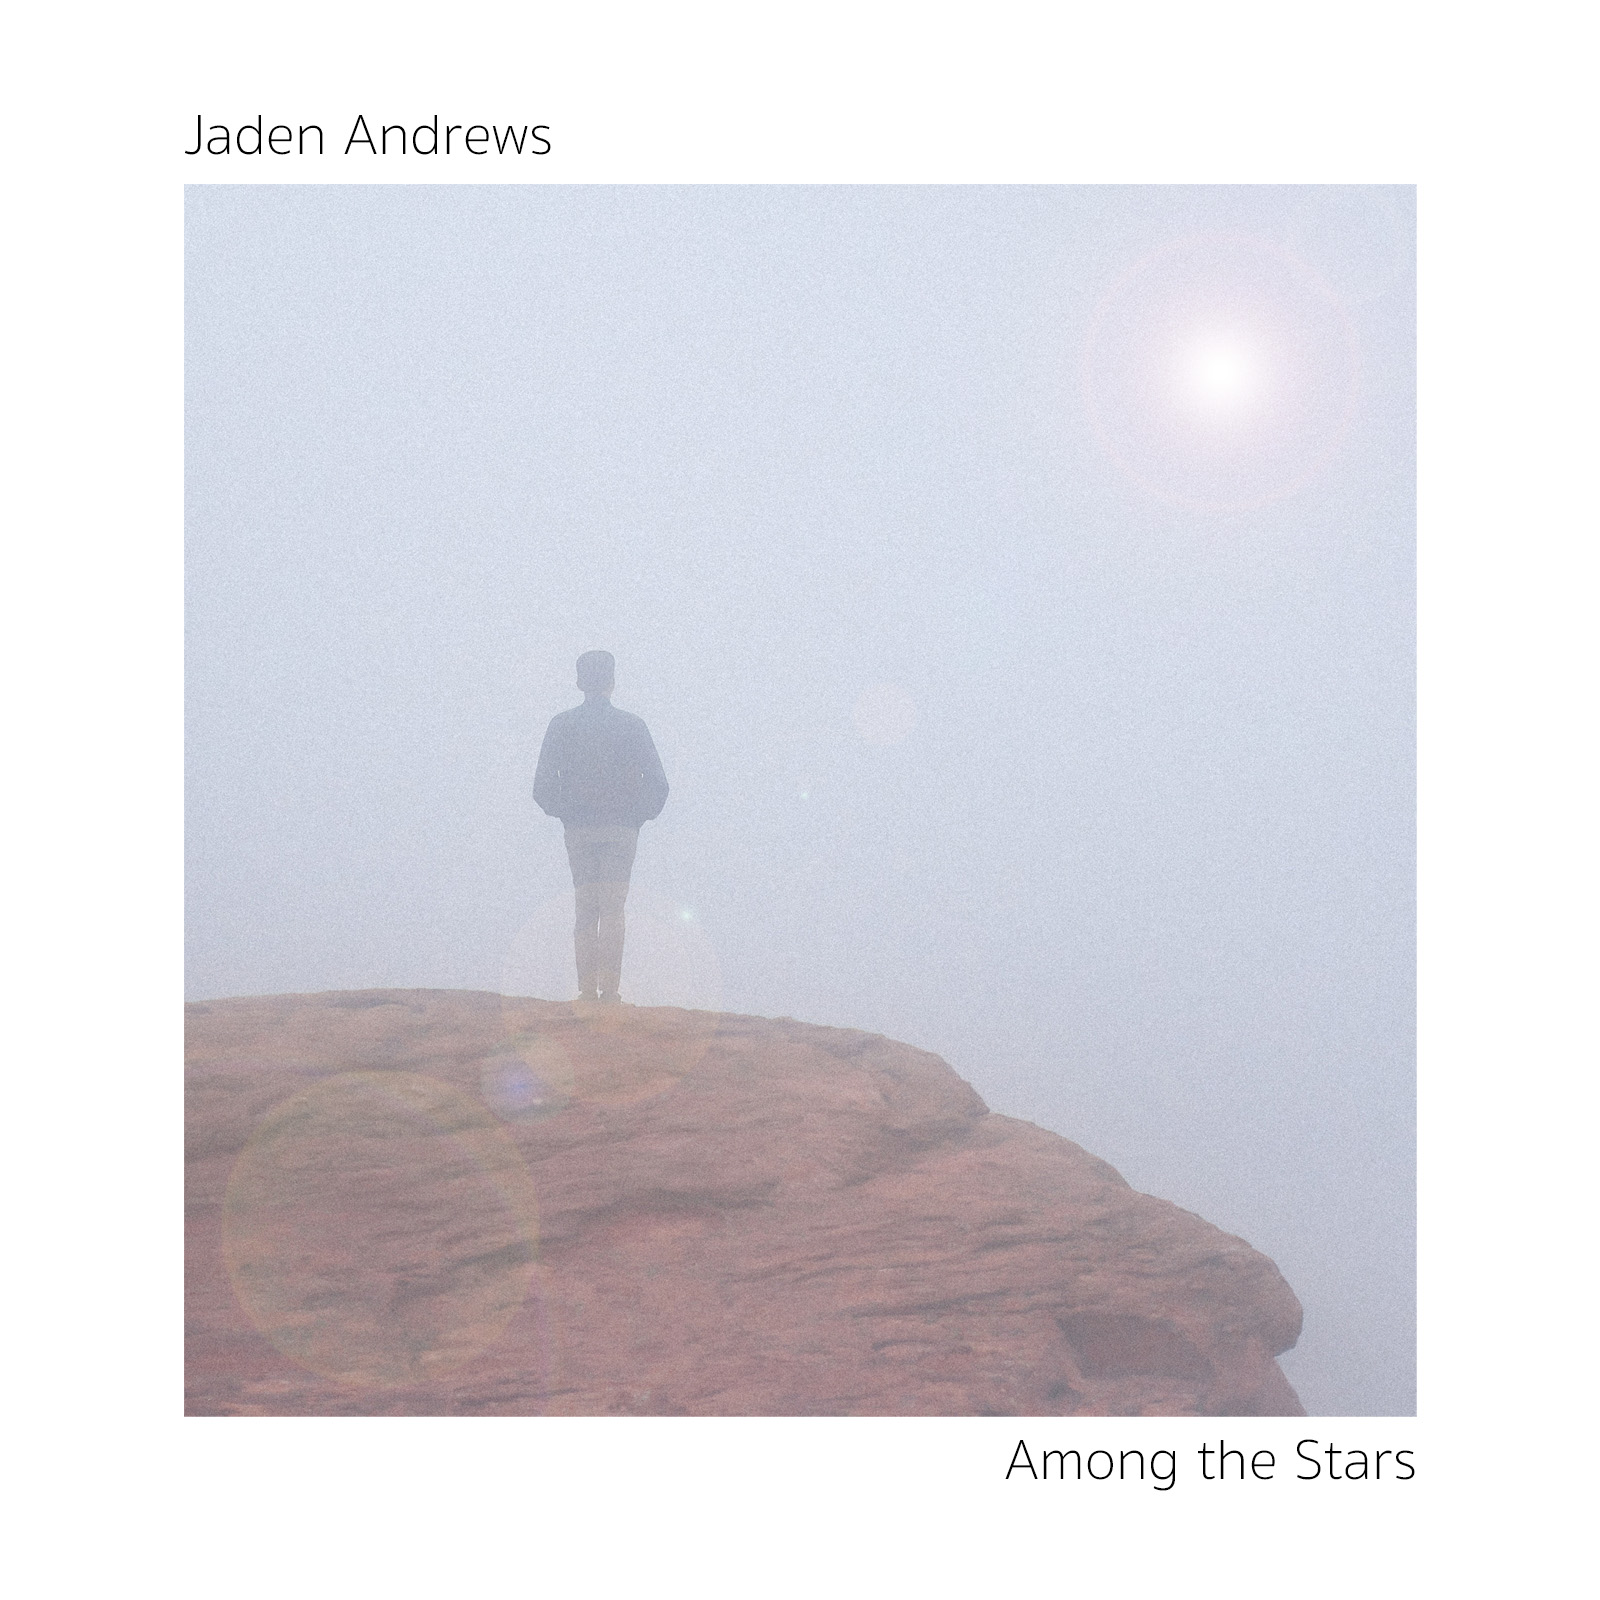 Album Cover for Jaden Andrews' Among the Stars